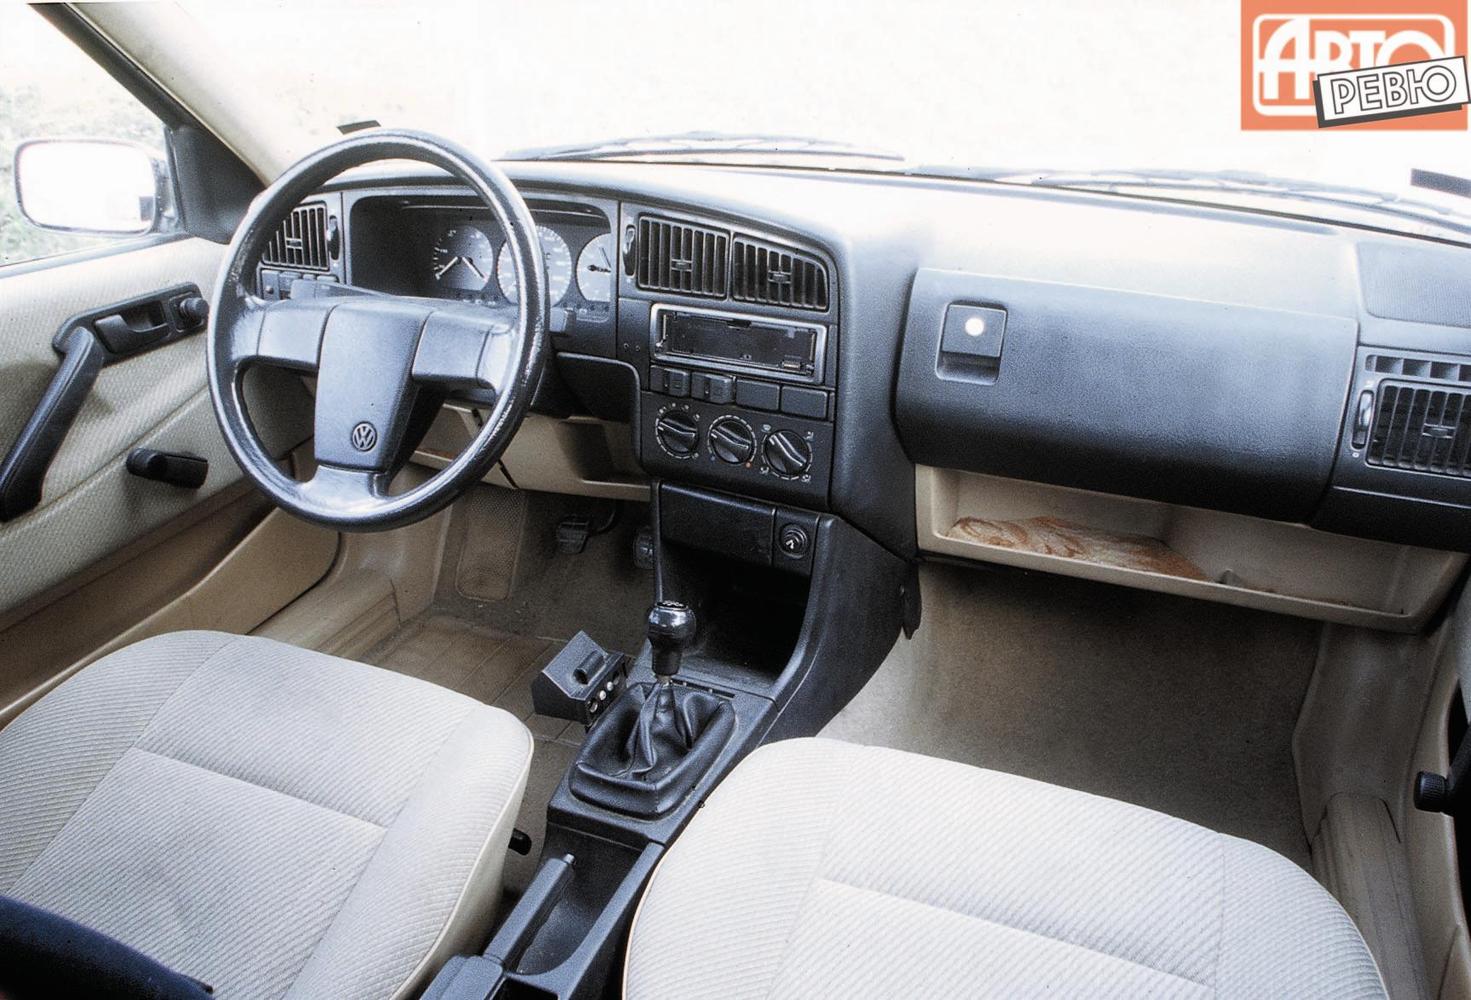 седан Volkswagen Passat 1988 - 1993г выпуска модификация 1.6 MT (72 л.с.)